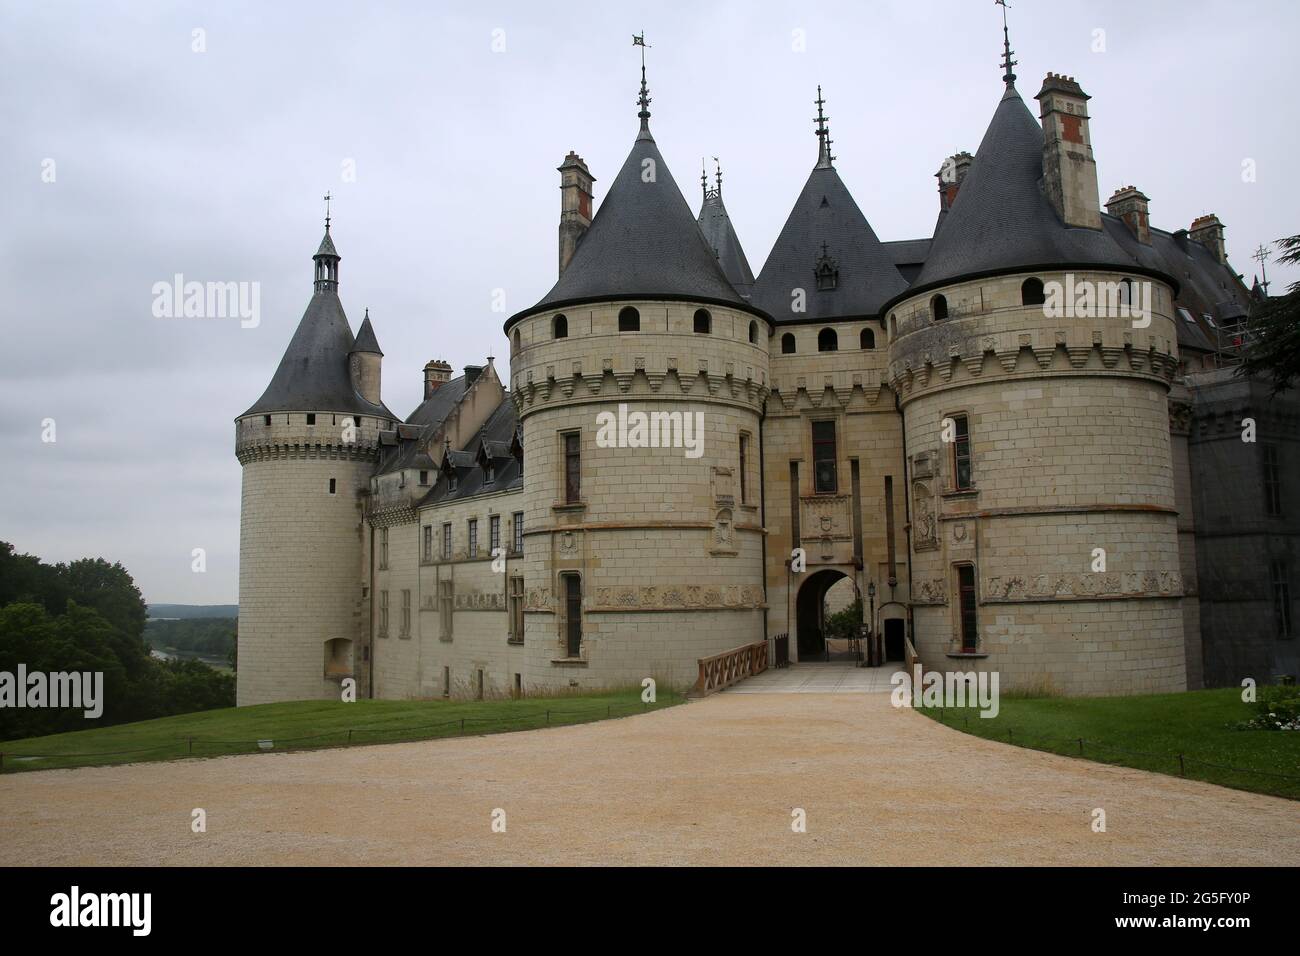 Chateau de Chaumont, Pays de la Loire, France, Europe Stock Photo